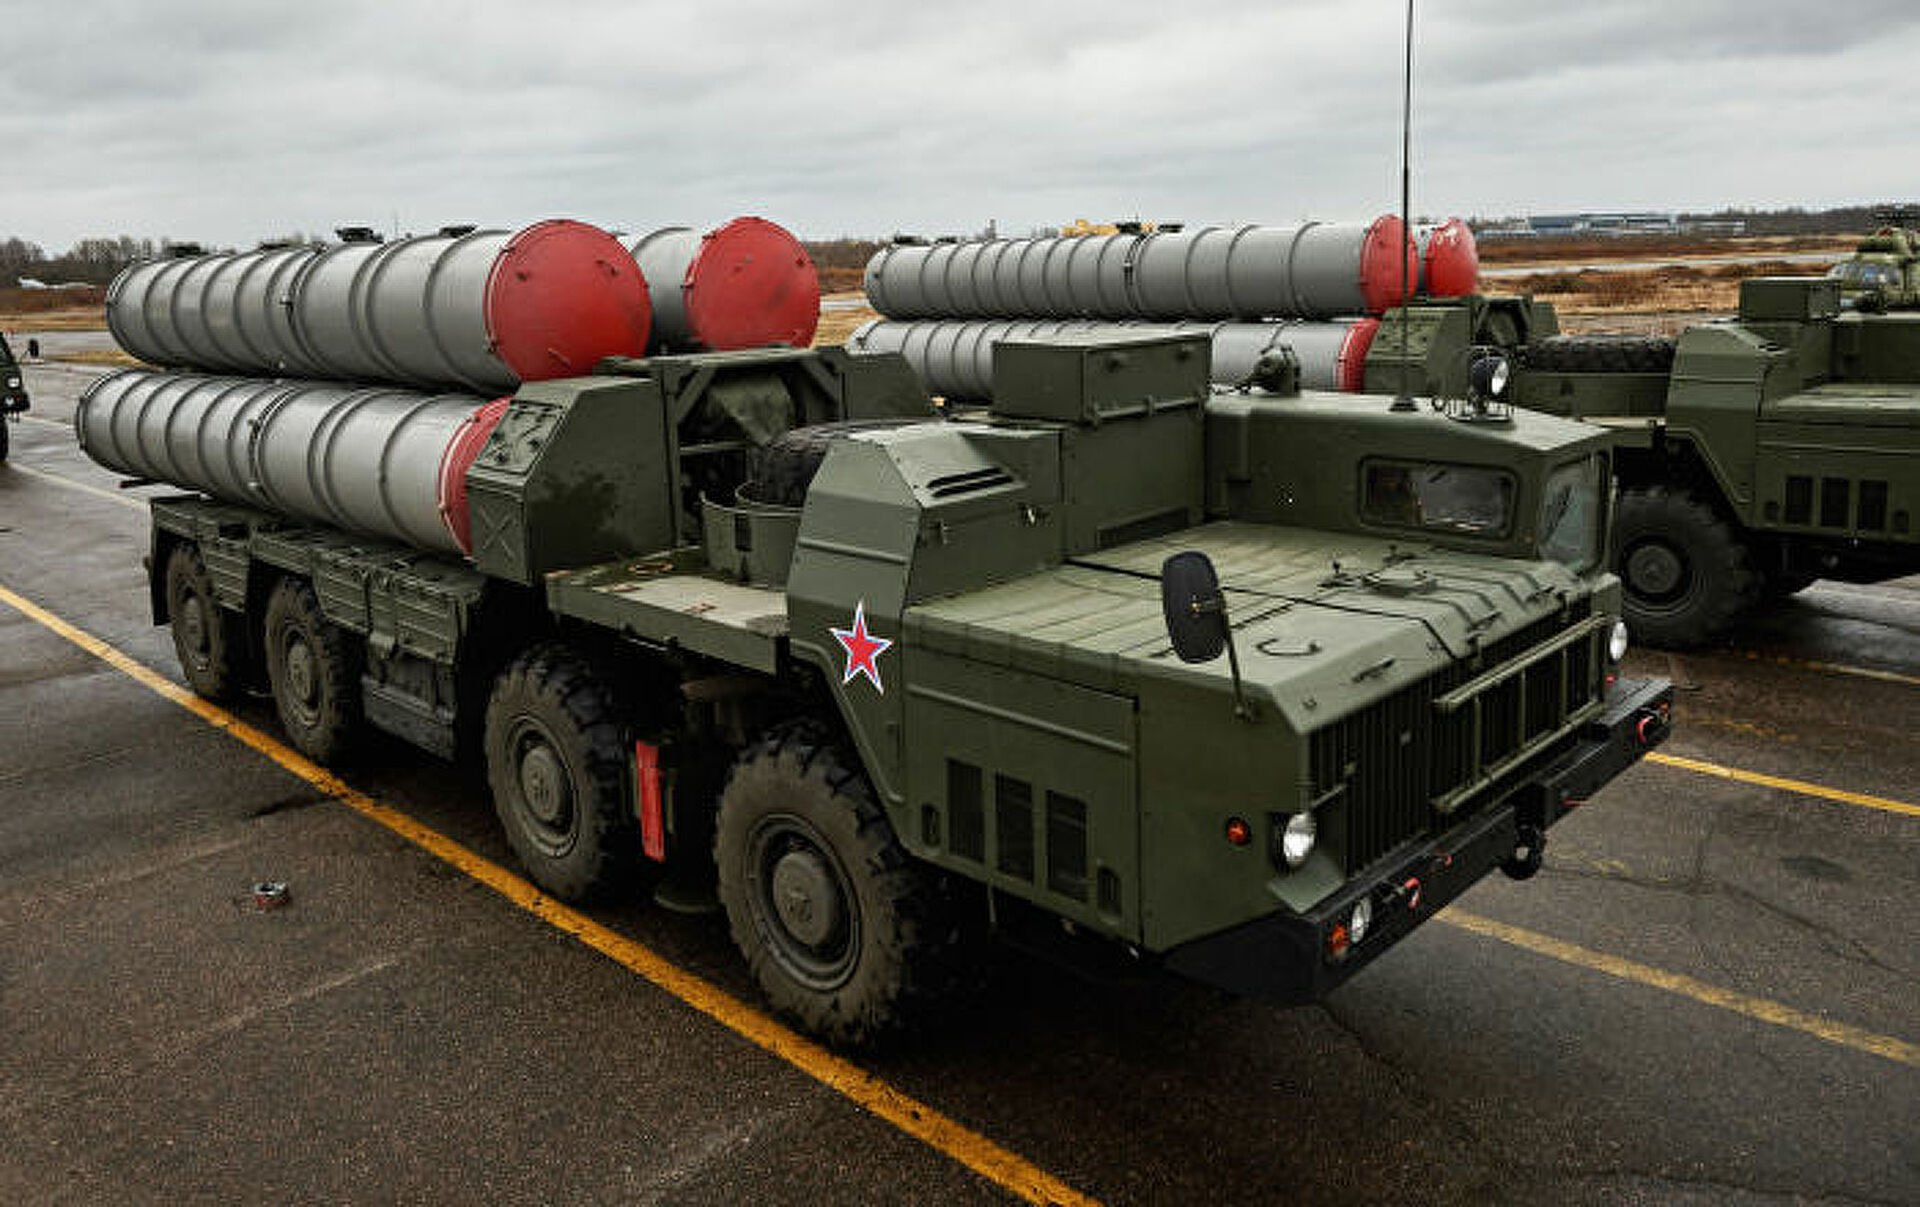 صواريخ "إس-300" الروسية